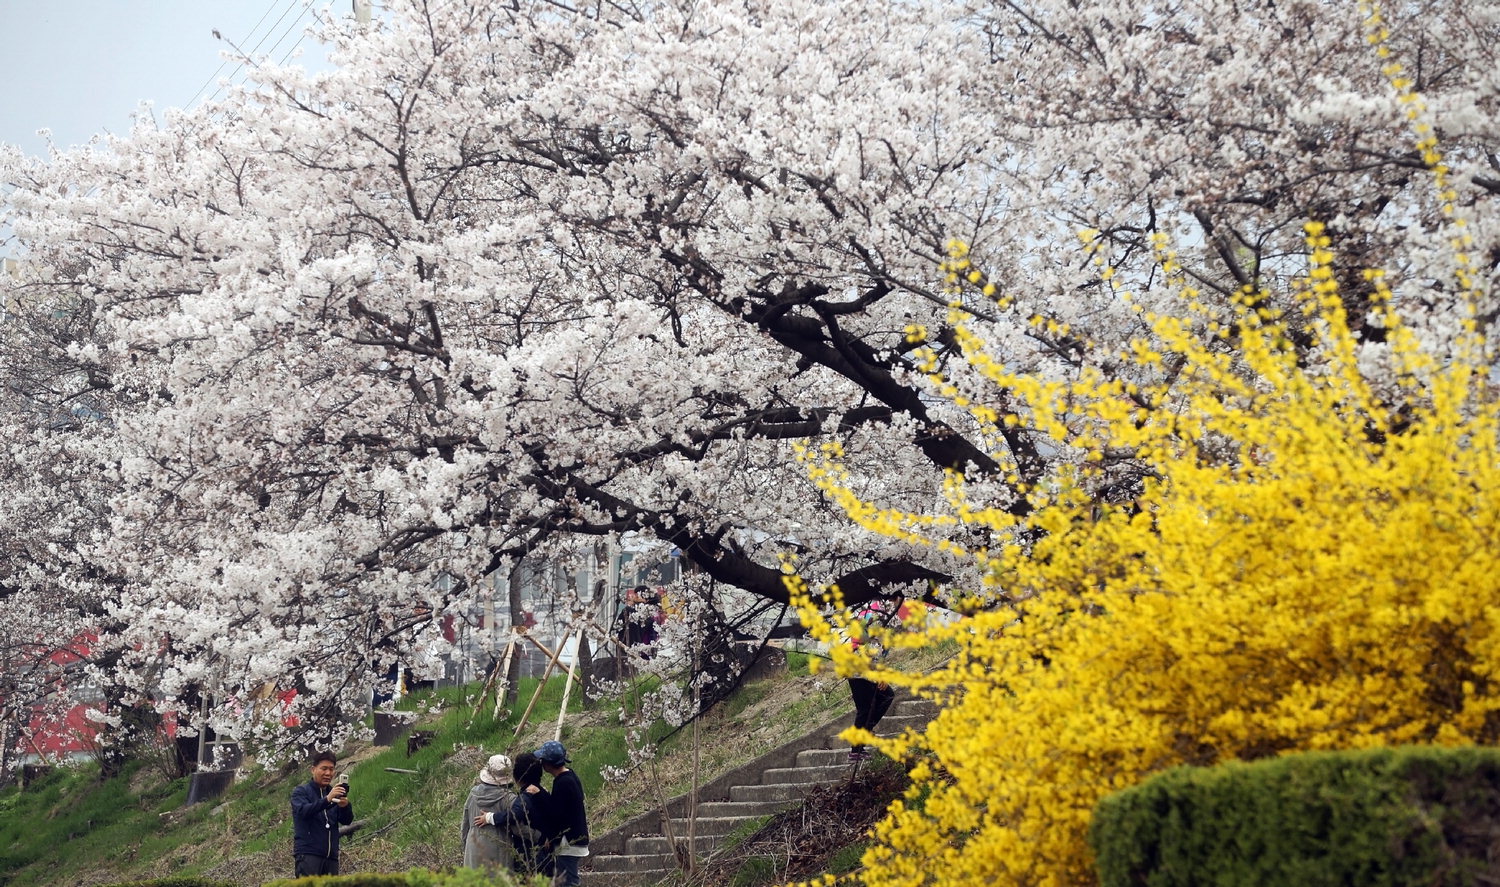 전국적으로 낮 최고기온이 20도를 넘어서 포근한 날씨가 찾아온 1일 청주 무심천 벚꽃나무가 꽃망울을 터뜨리며 4월의 첫날을 반기고 있다./신동빈